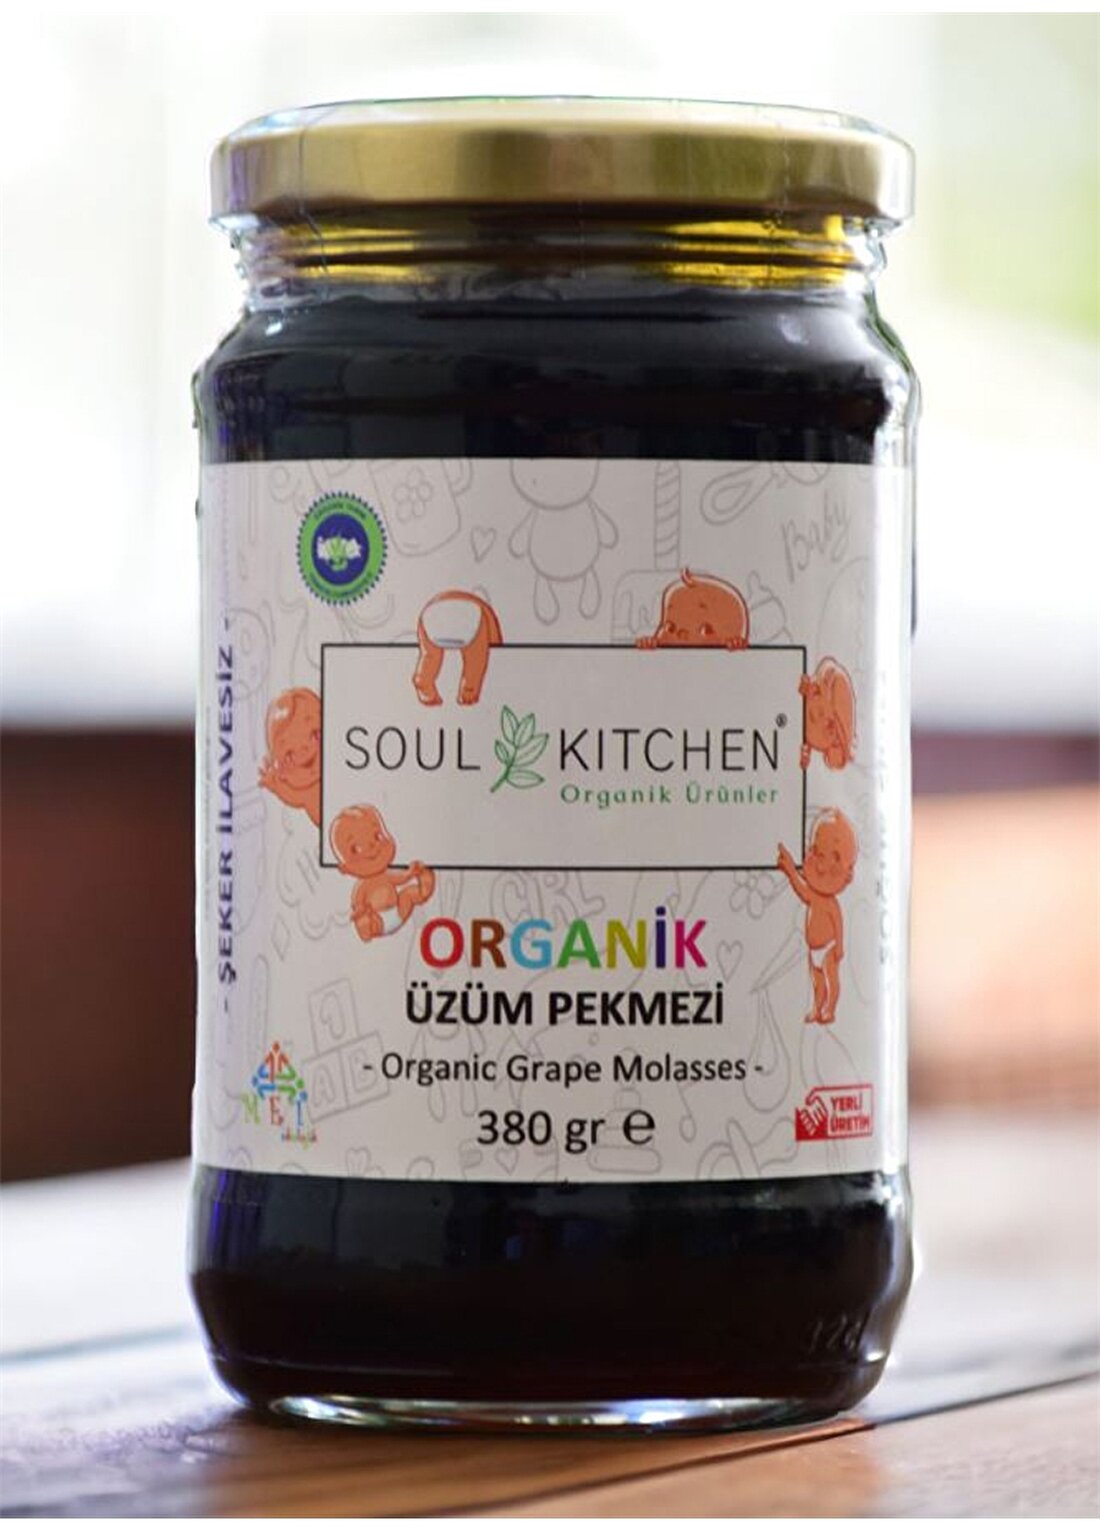 Soul Kitchen Organik Bebek Üzüm Pekmezi 380Gr (Soğuk Sıkım) (Şeker İlavesiz)